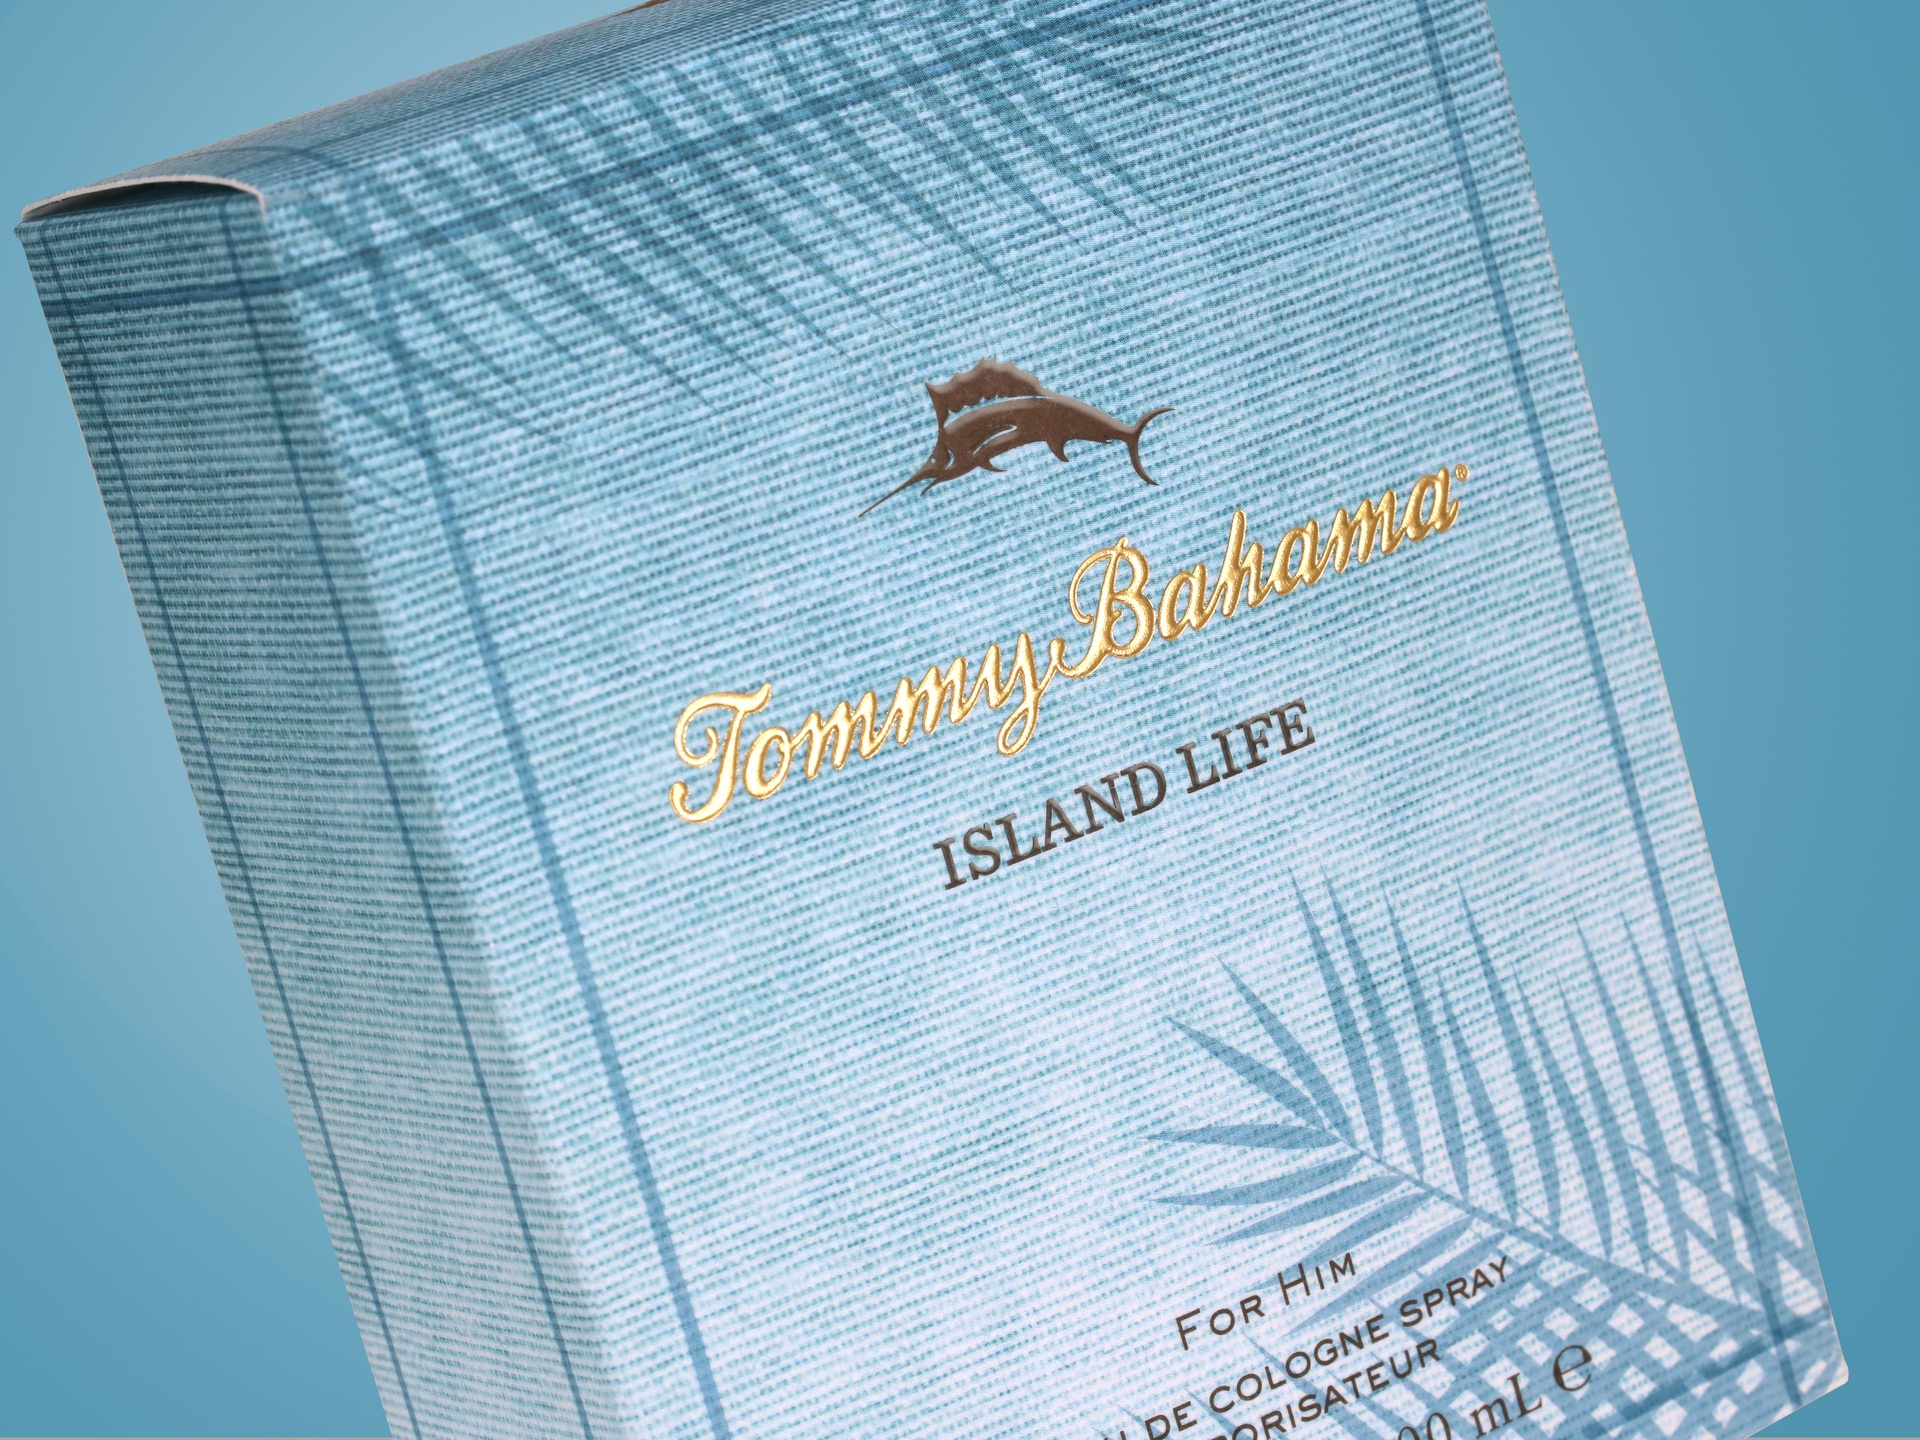 Tommy Bahama Island Life folding carton